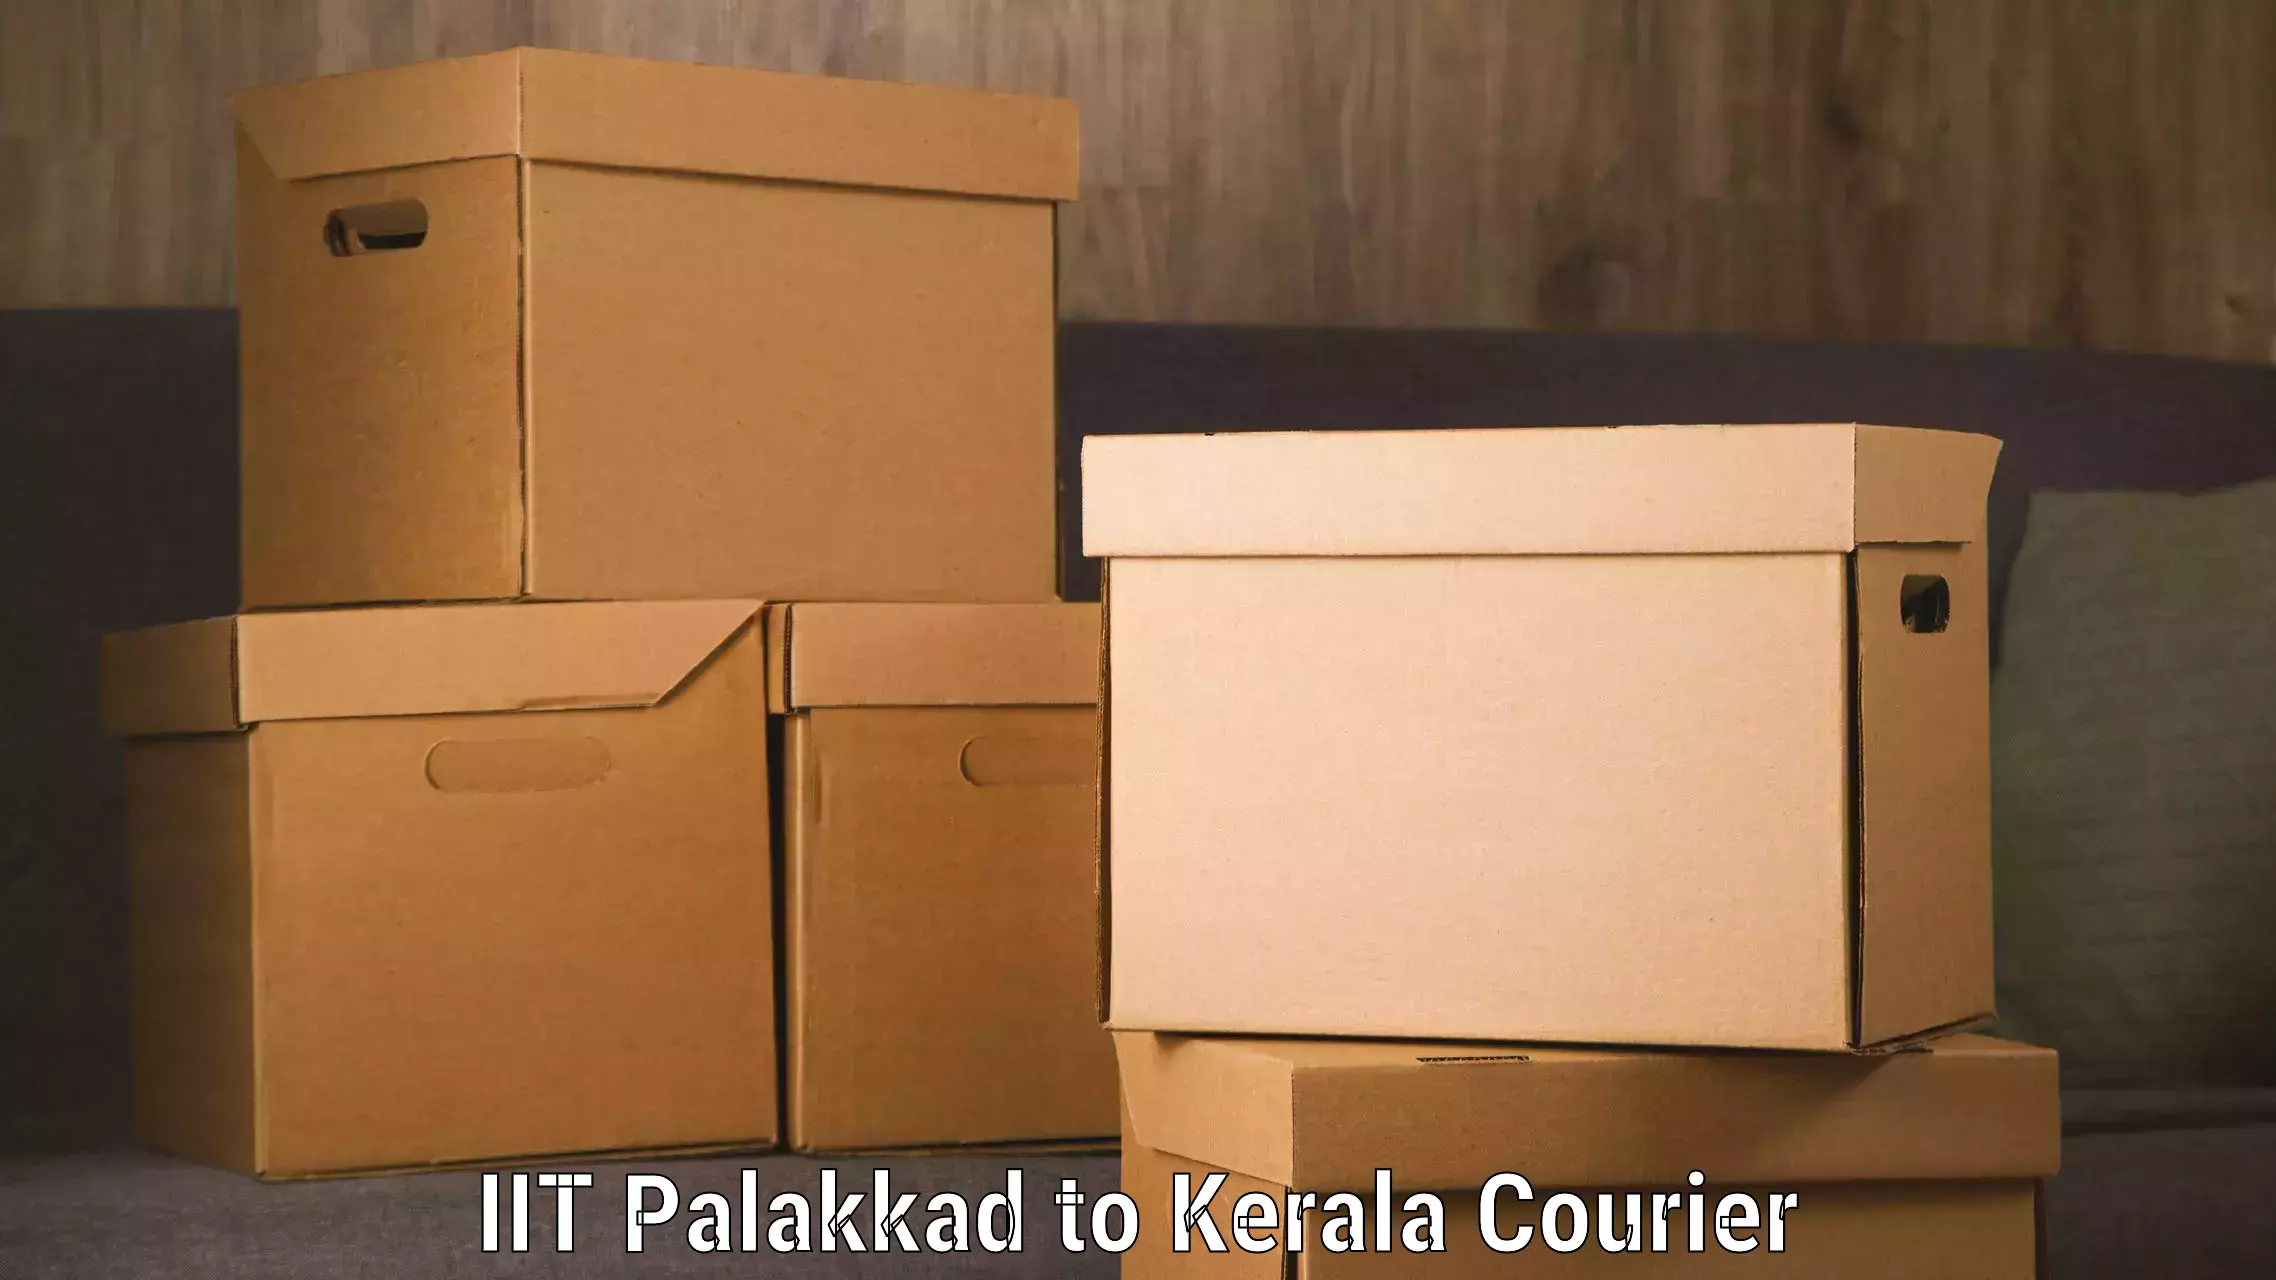 Holiday shipping services IIT Palakkad to Kerala